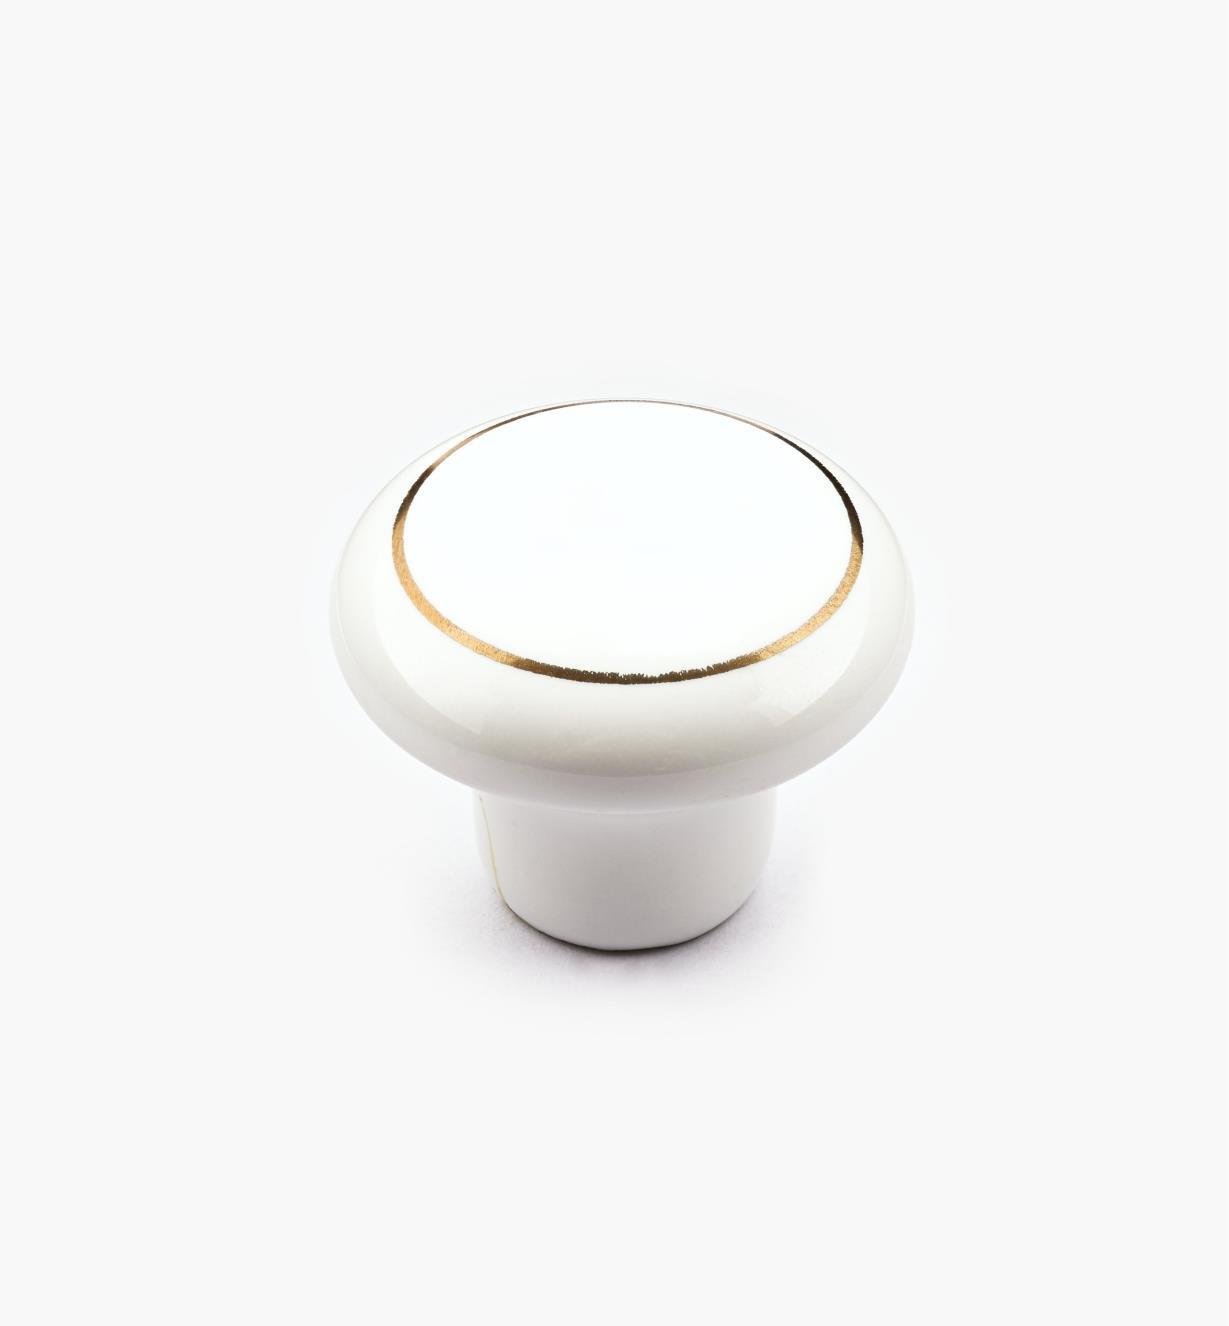 00W2807 - Bouton en céramique classique, blanc et or, 1 1/4 po x 1 po